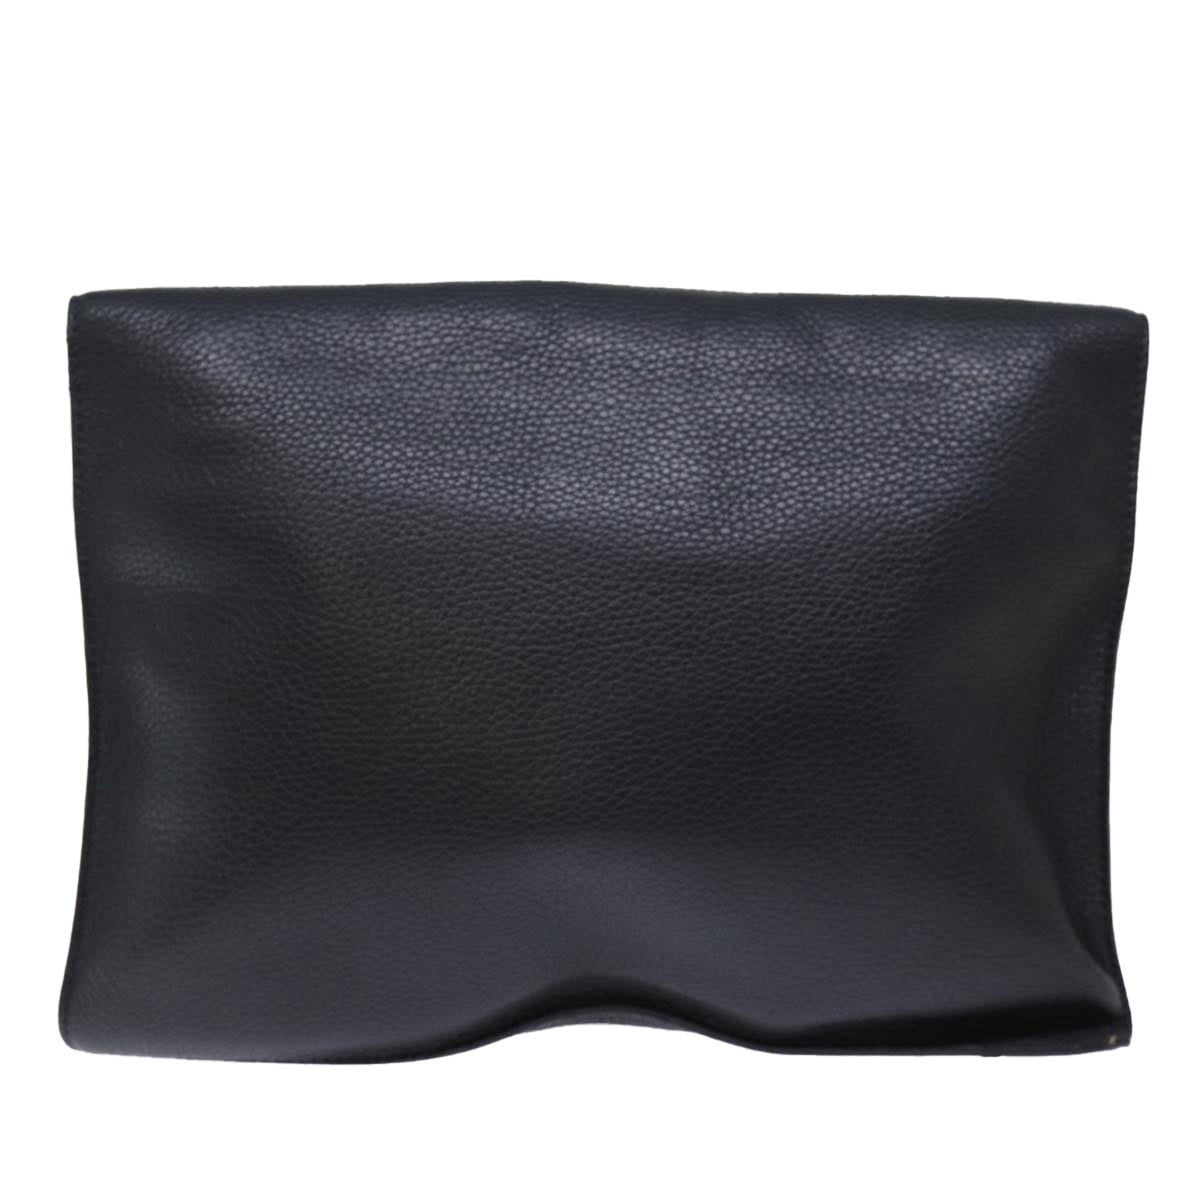 LOUIS VUITTON Taurillon Portfolio Clutch Bag Leather Black M48811 LV Auth 73222 - 0